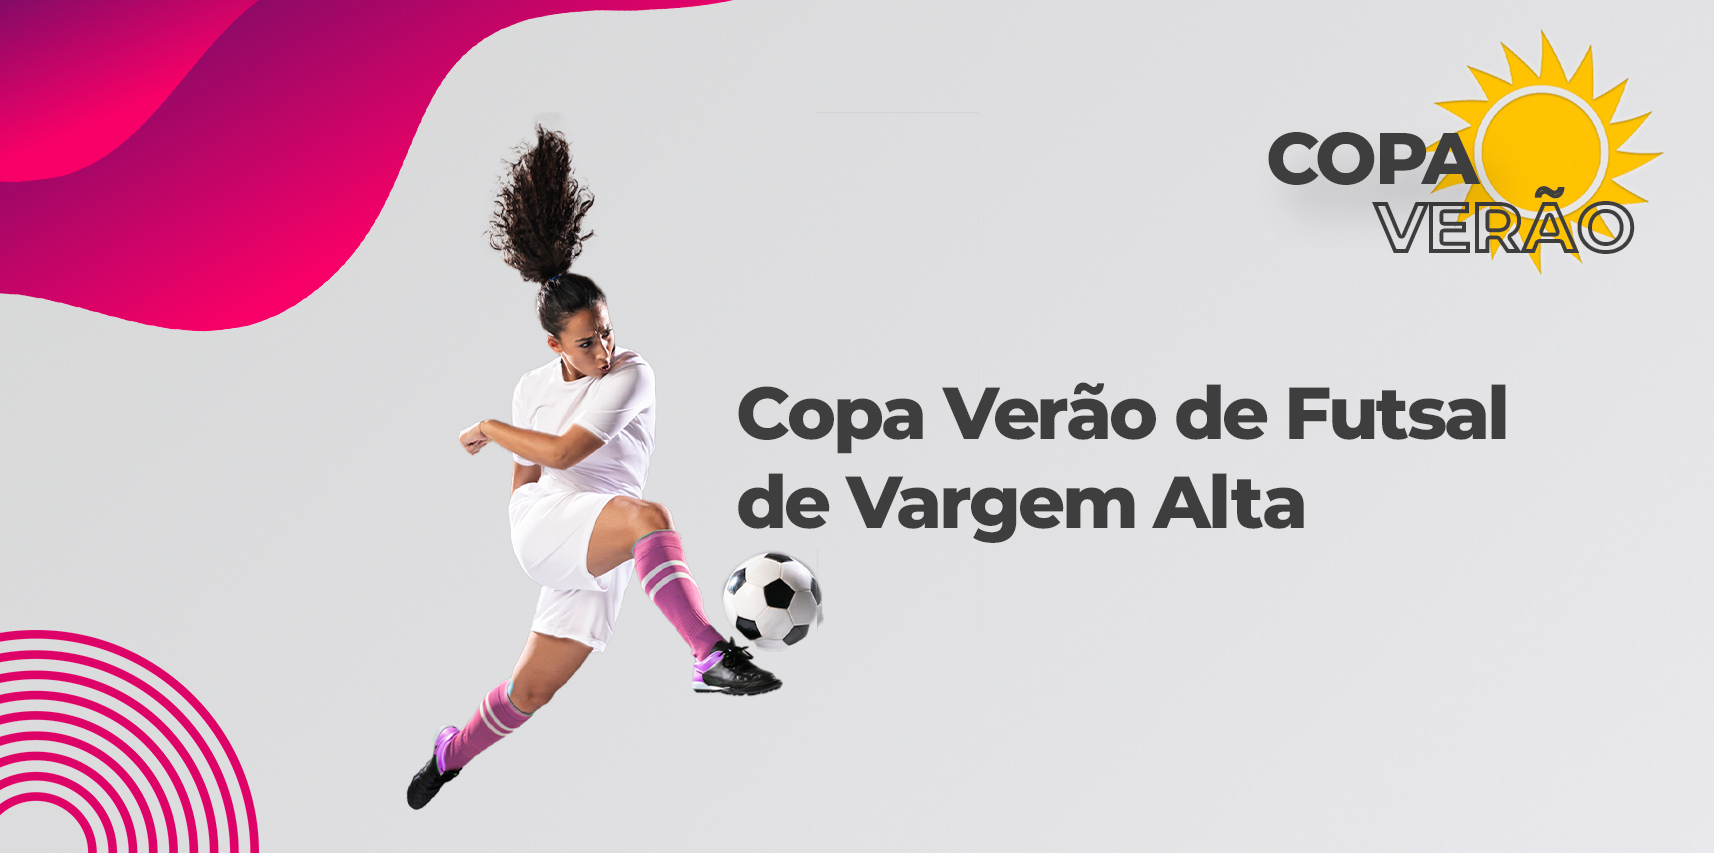 Copa Verão de Futsal de Vargem Alta começa dia 07 de fevereiro, saiba como participar